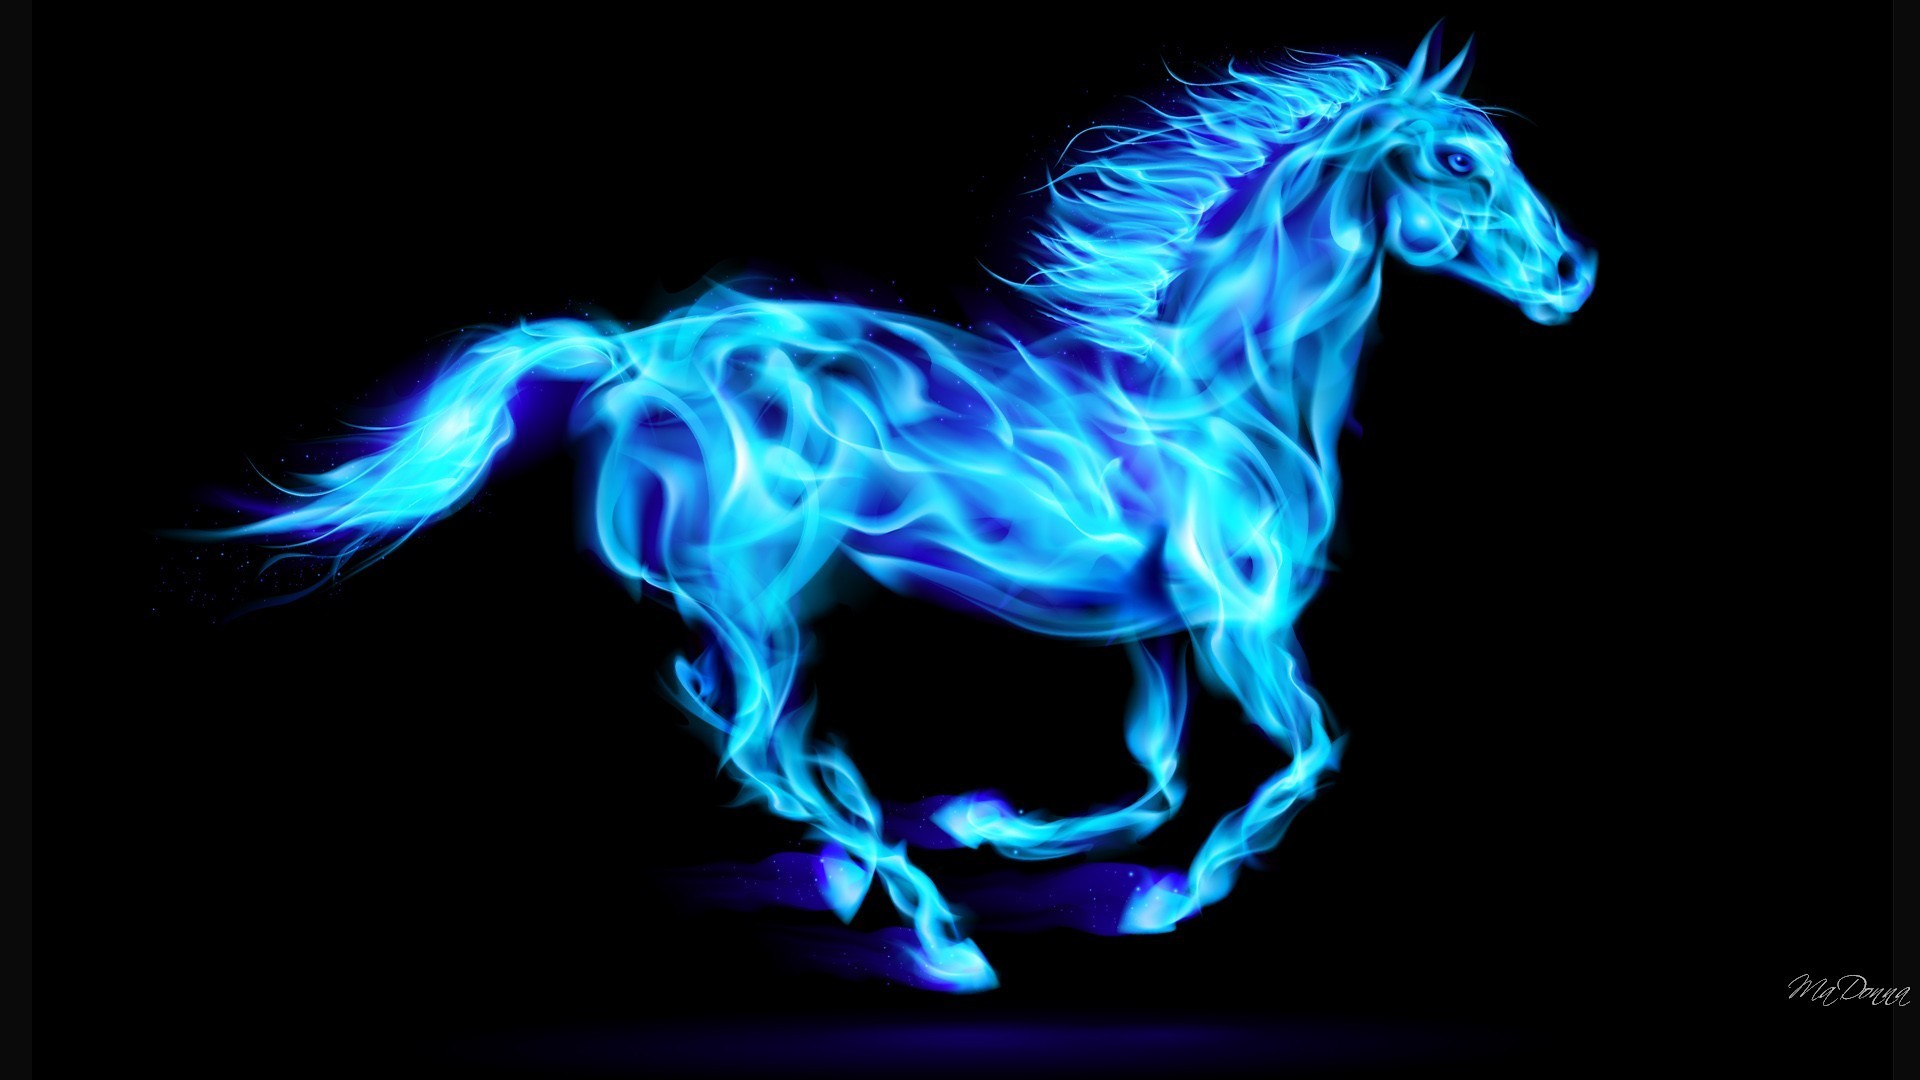 fantastici sfondi per cavalli,blu,cavallo,blu elettrico,criniera,disegno grafico